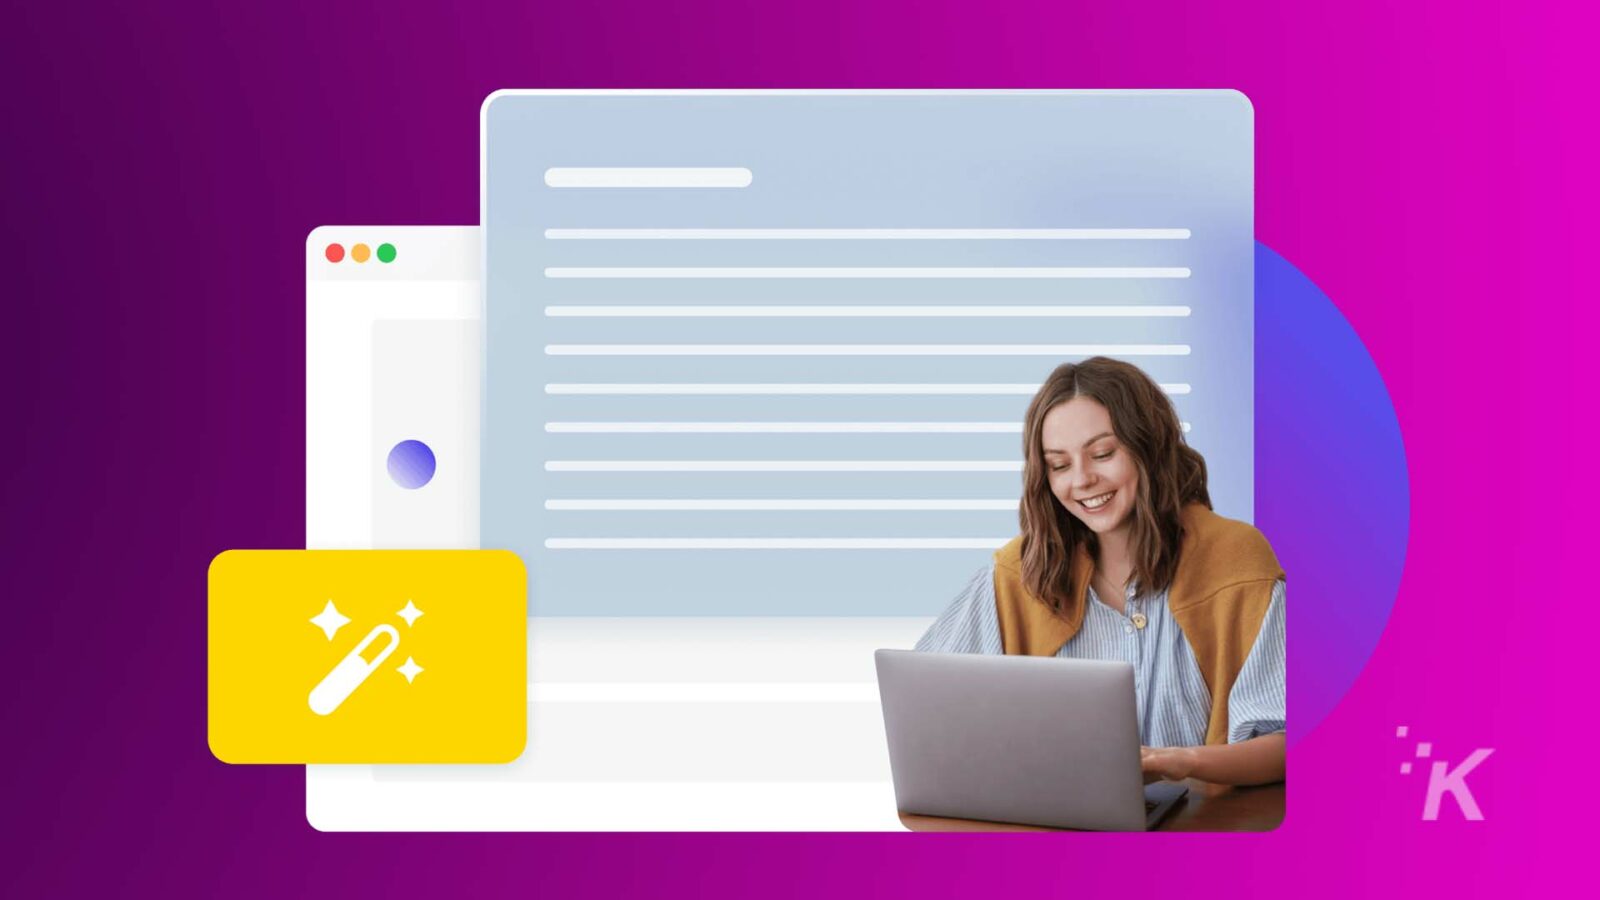 Una persona sorride davanti al proprio laptop con una sovrapposizione grafica che implica strumenti di sviluppo web, caratterizzata da un vivace sfondo viola e blu.